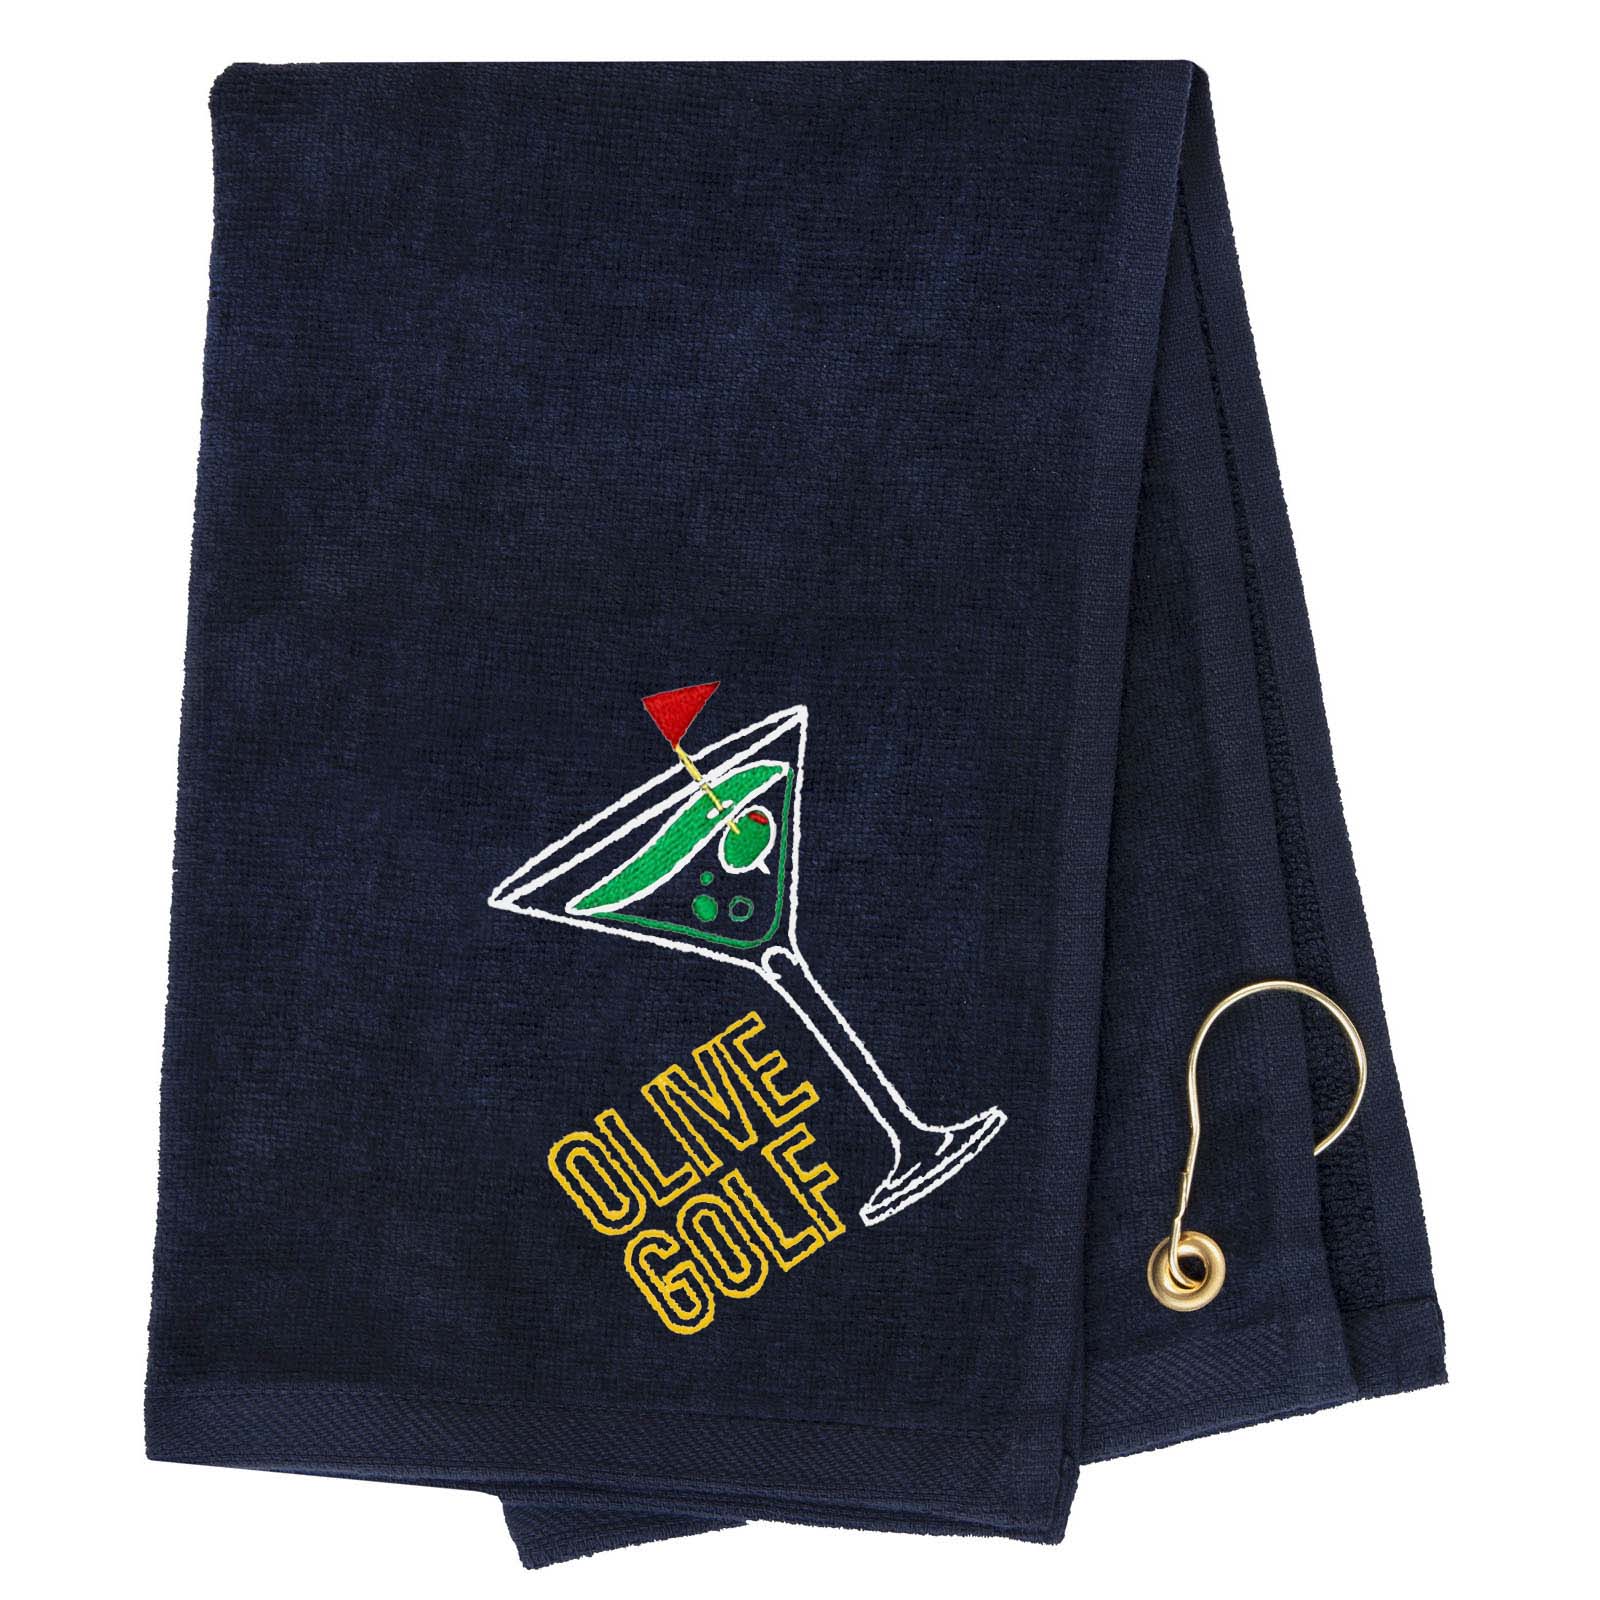 Mato & Hash Olive Golf Towel Embroidery - Mato & Hash